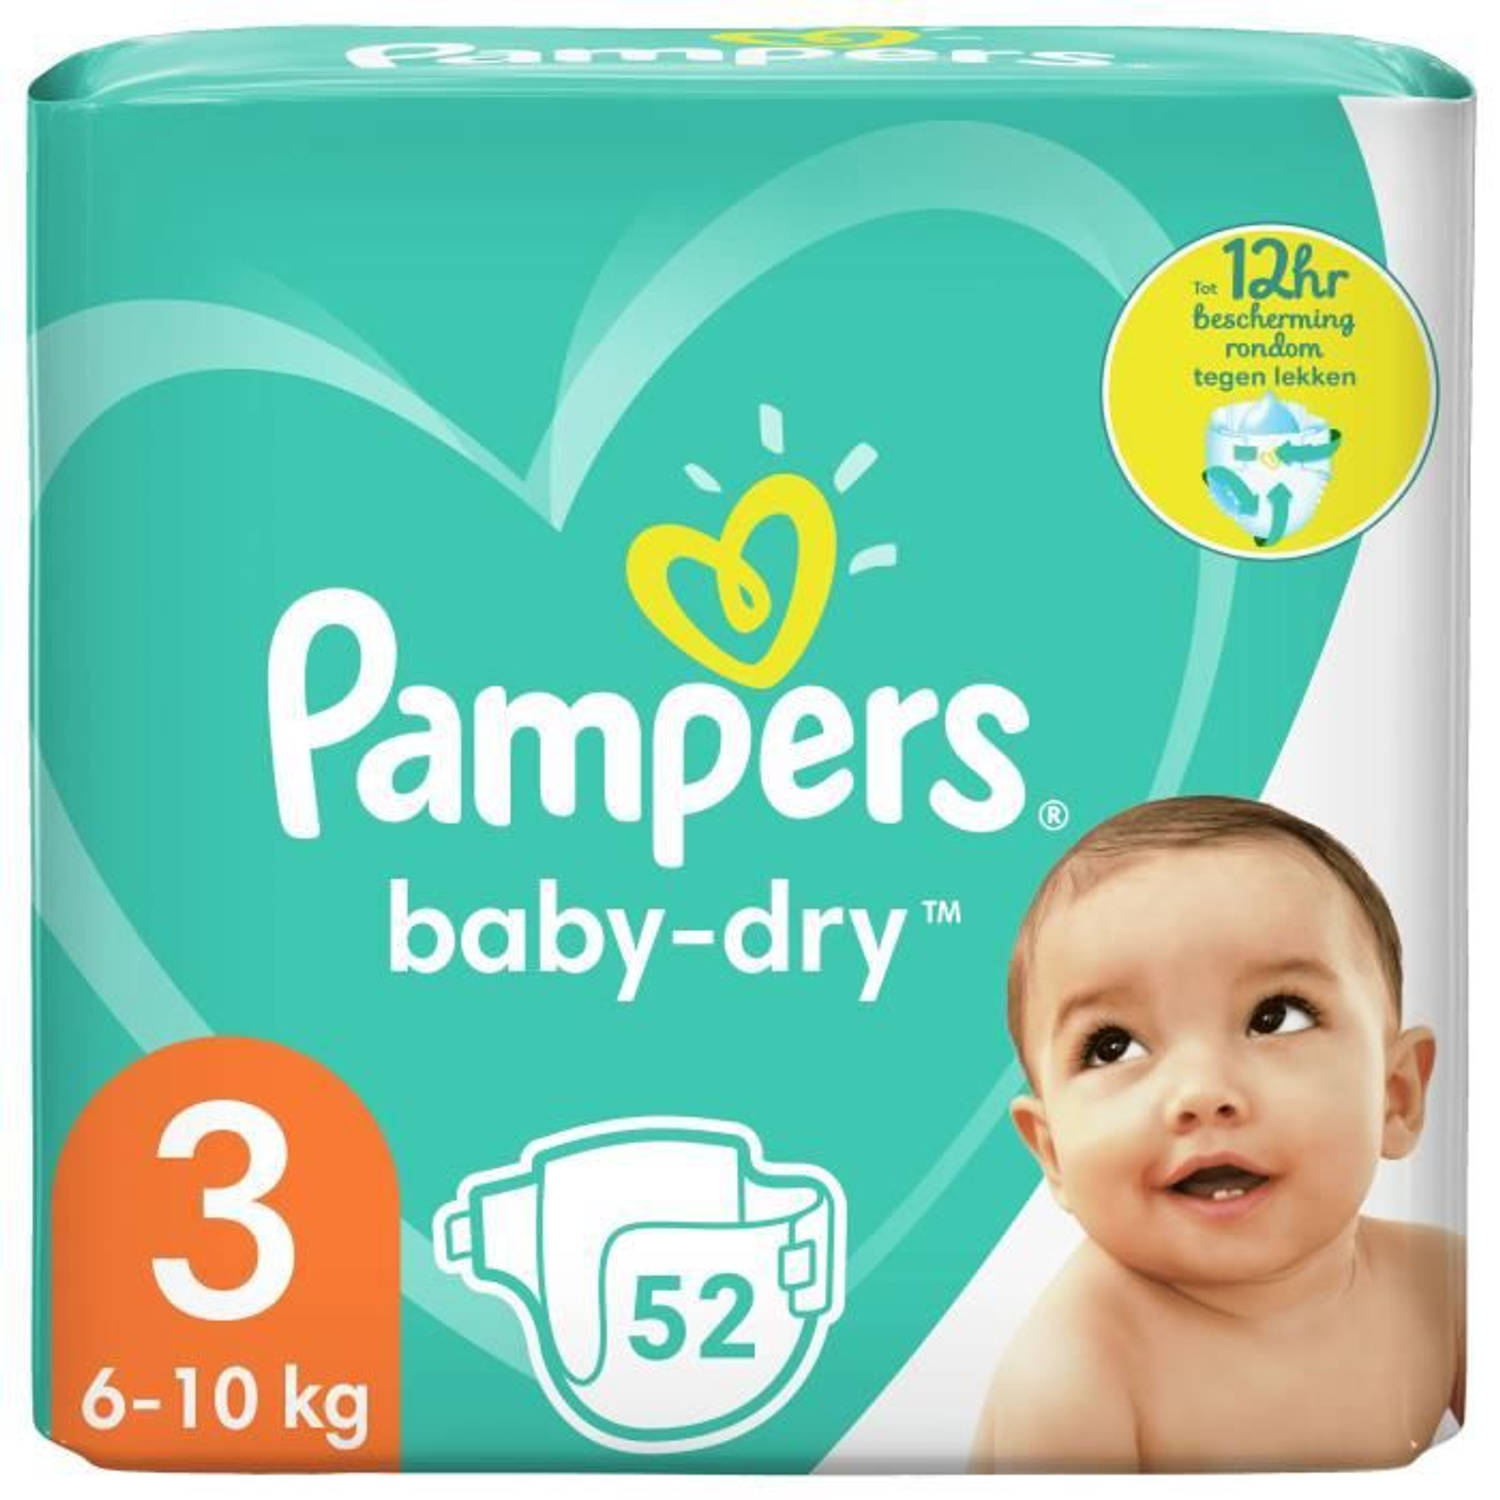 Pampers Baby-dry Maat 3, 52 Luiers